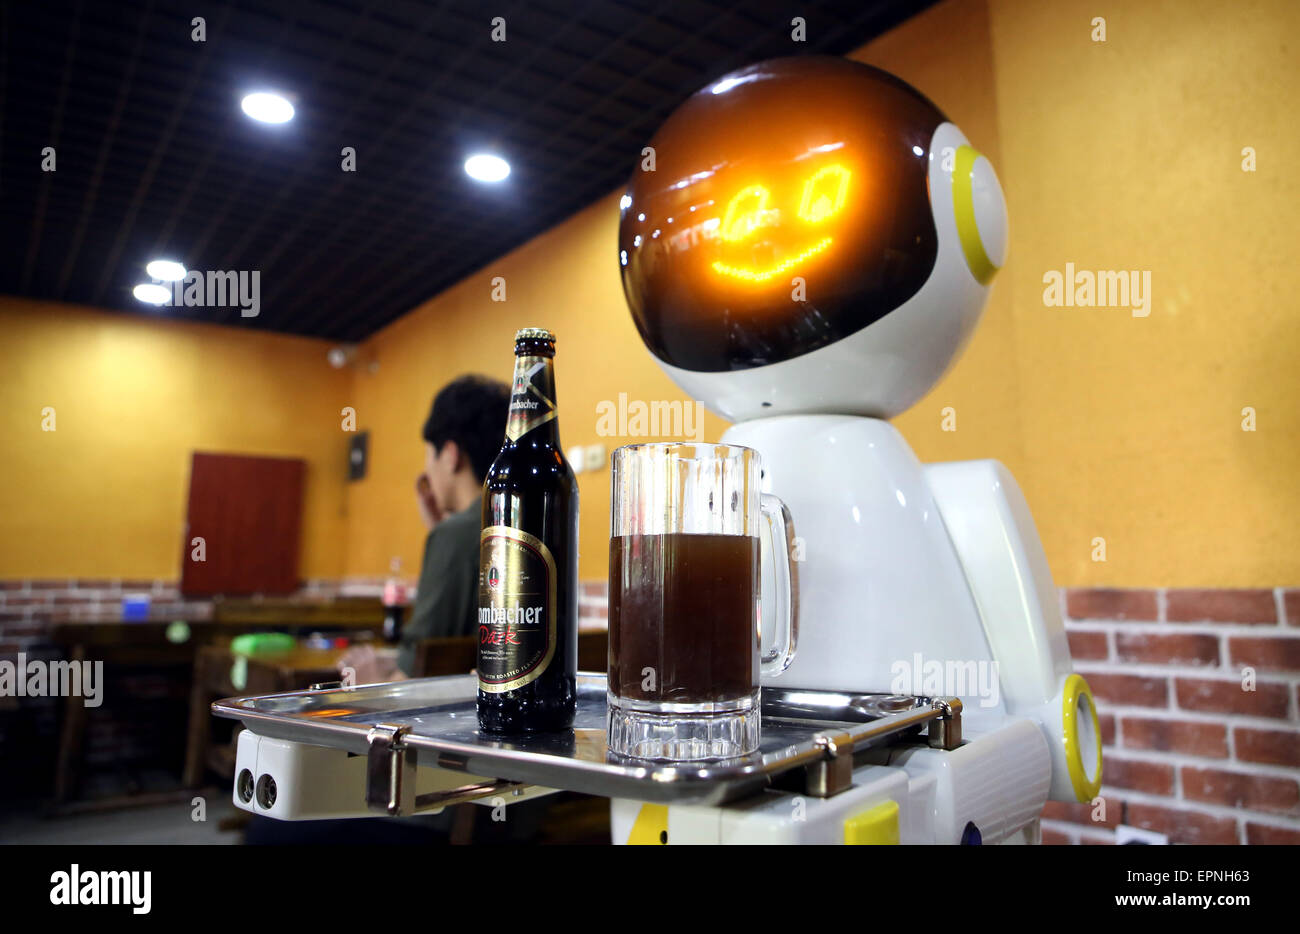 Shenyang, cinese della provincia di Liaoning. Il 20 maggio 2015. Un robot serve la birra in un ristorante di Shenyang, capitale del nord-est della Cina di Provincia di Liaoning, 20 maggio 2015. Alimentato da batteria a lavorare fino a 7 ore e il 140-centimetro-alta pesi robot 70 chilogrammi e si muove a una velocità di 0,8 metri al secondo. Integrato con sensori di navigazione, hardware e tecnologia per interfacce utente, è in grado di trattenere e servire fino a 8 kg di alimento o bevanda in una sola volta. Credito: Yao Jianfeng/Xinhua/Alamy Live News Foto Stock